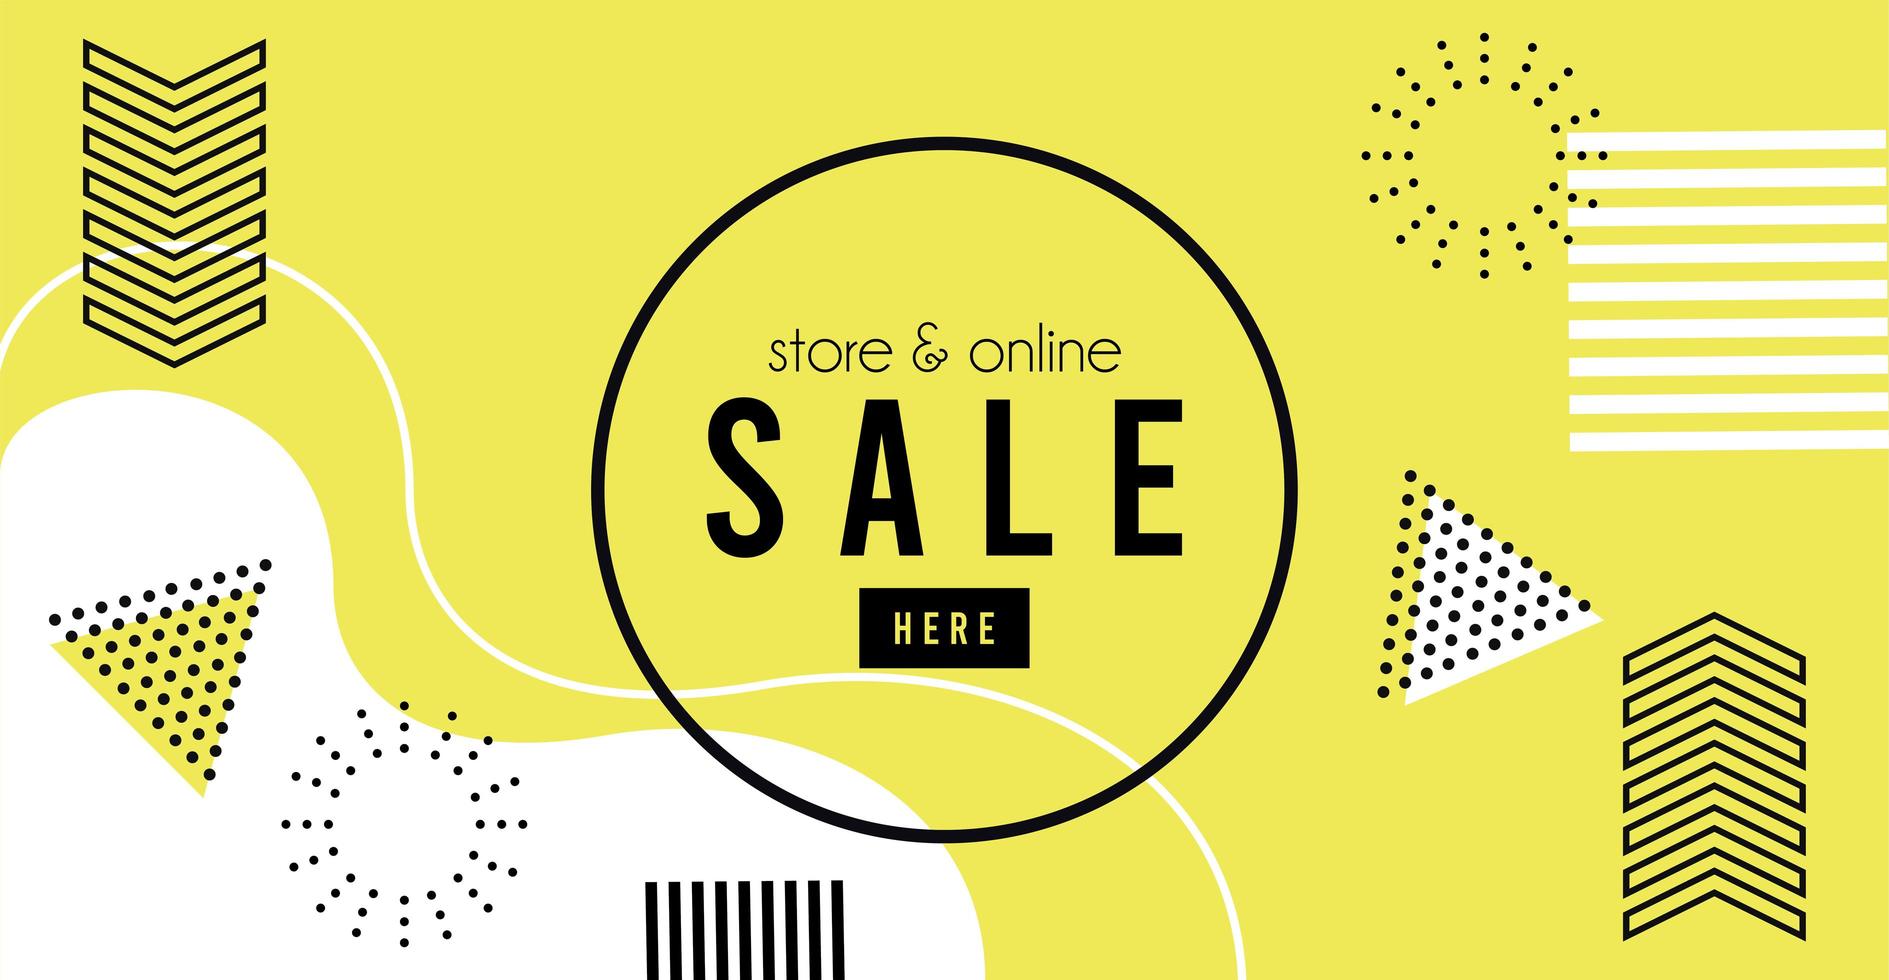 winkel online verkoop belettering op gele memphis achtergrond vector